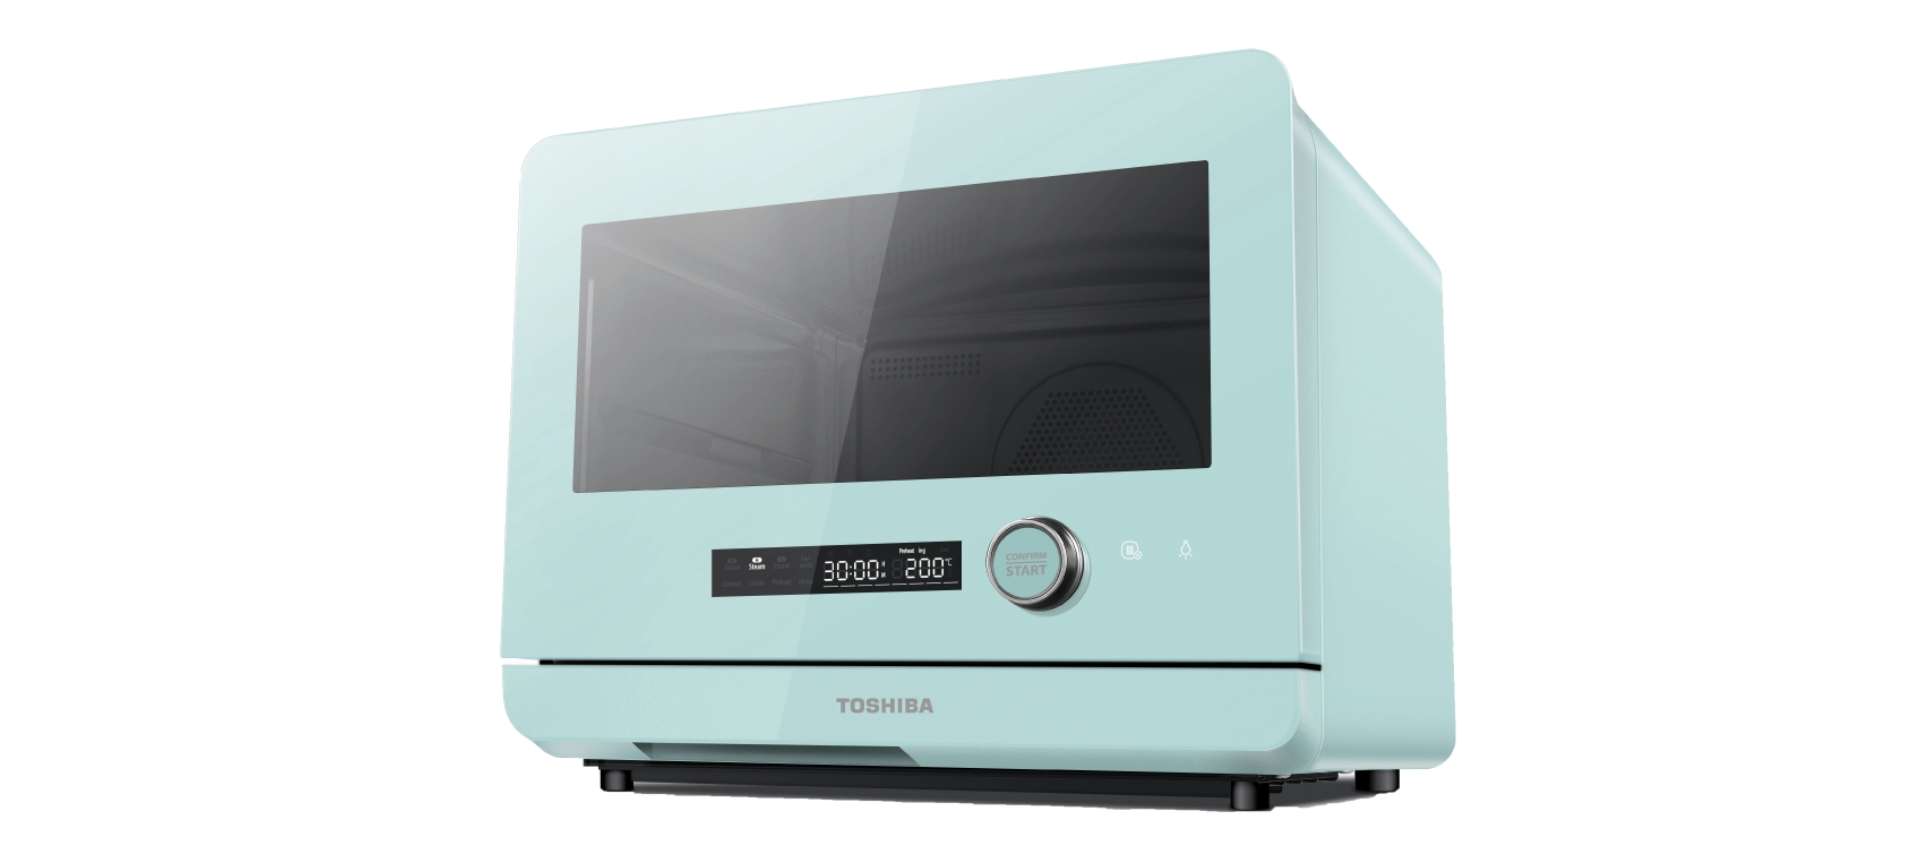 Toshiba 30L Steam Oven - - Toshiba Lifestyle Singapore